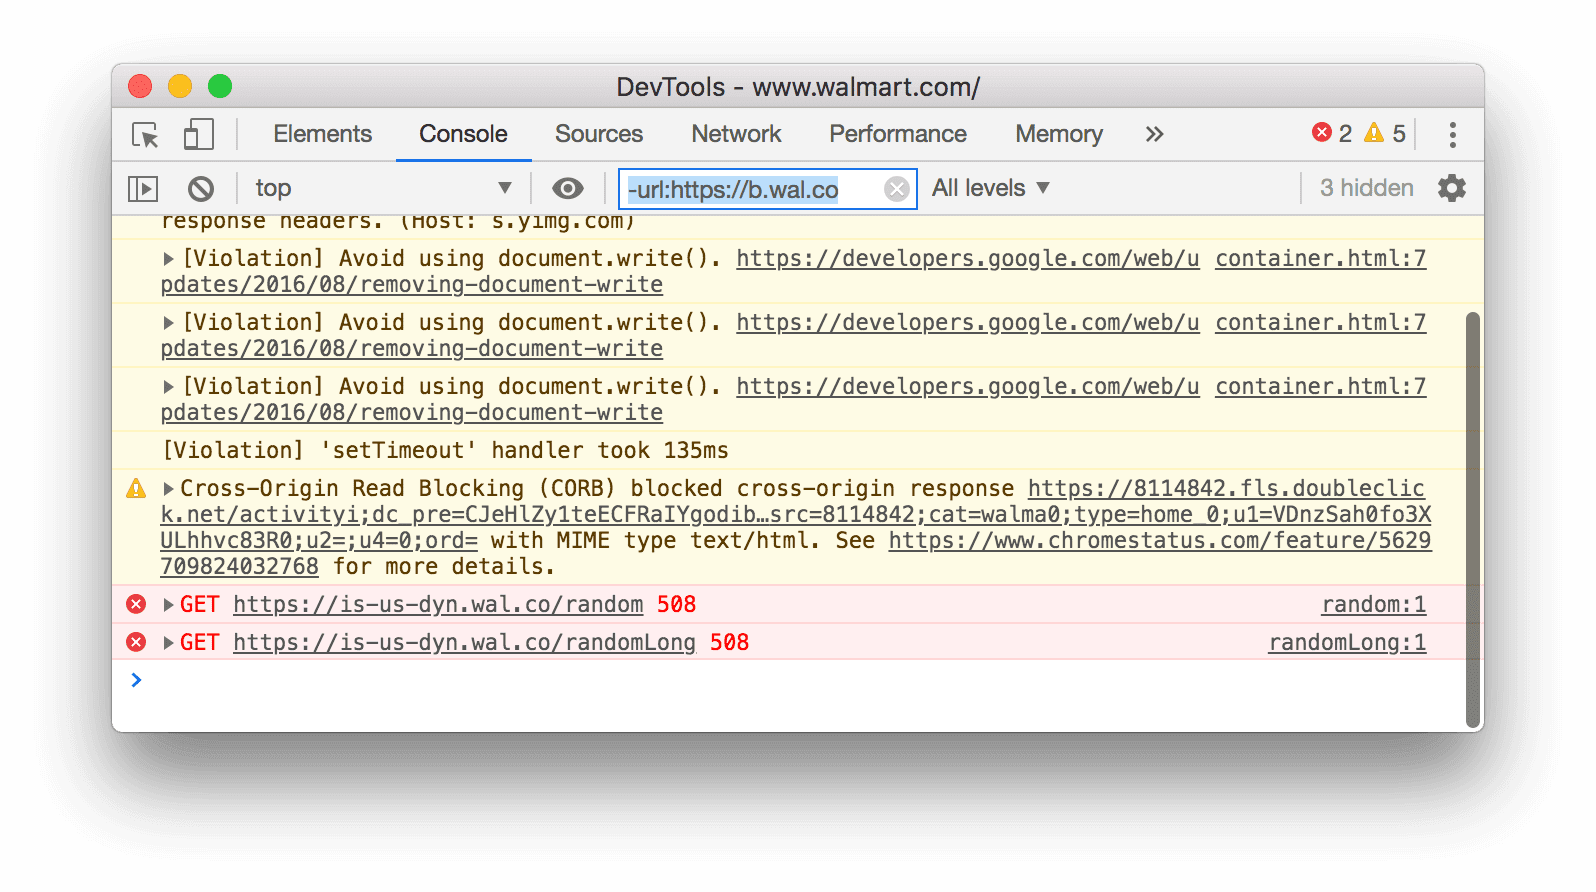 Bộ lọc URL phủ định. Công cụ cho nhà phát triển đang ẩn tất cả các thông báo khớp với URL được chỉ định.